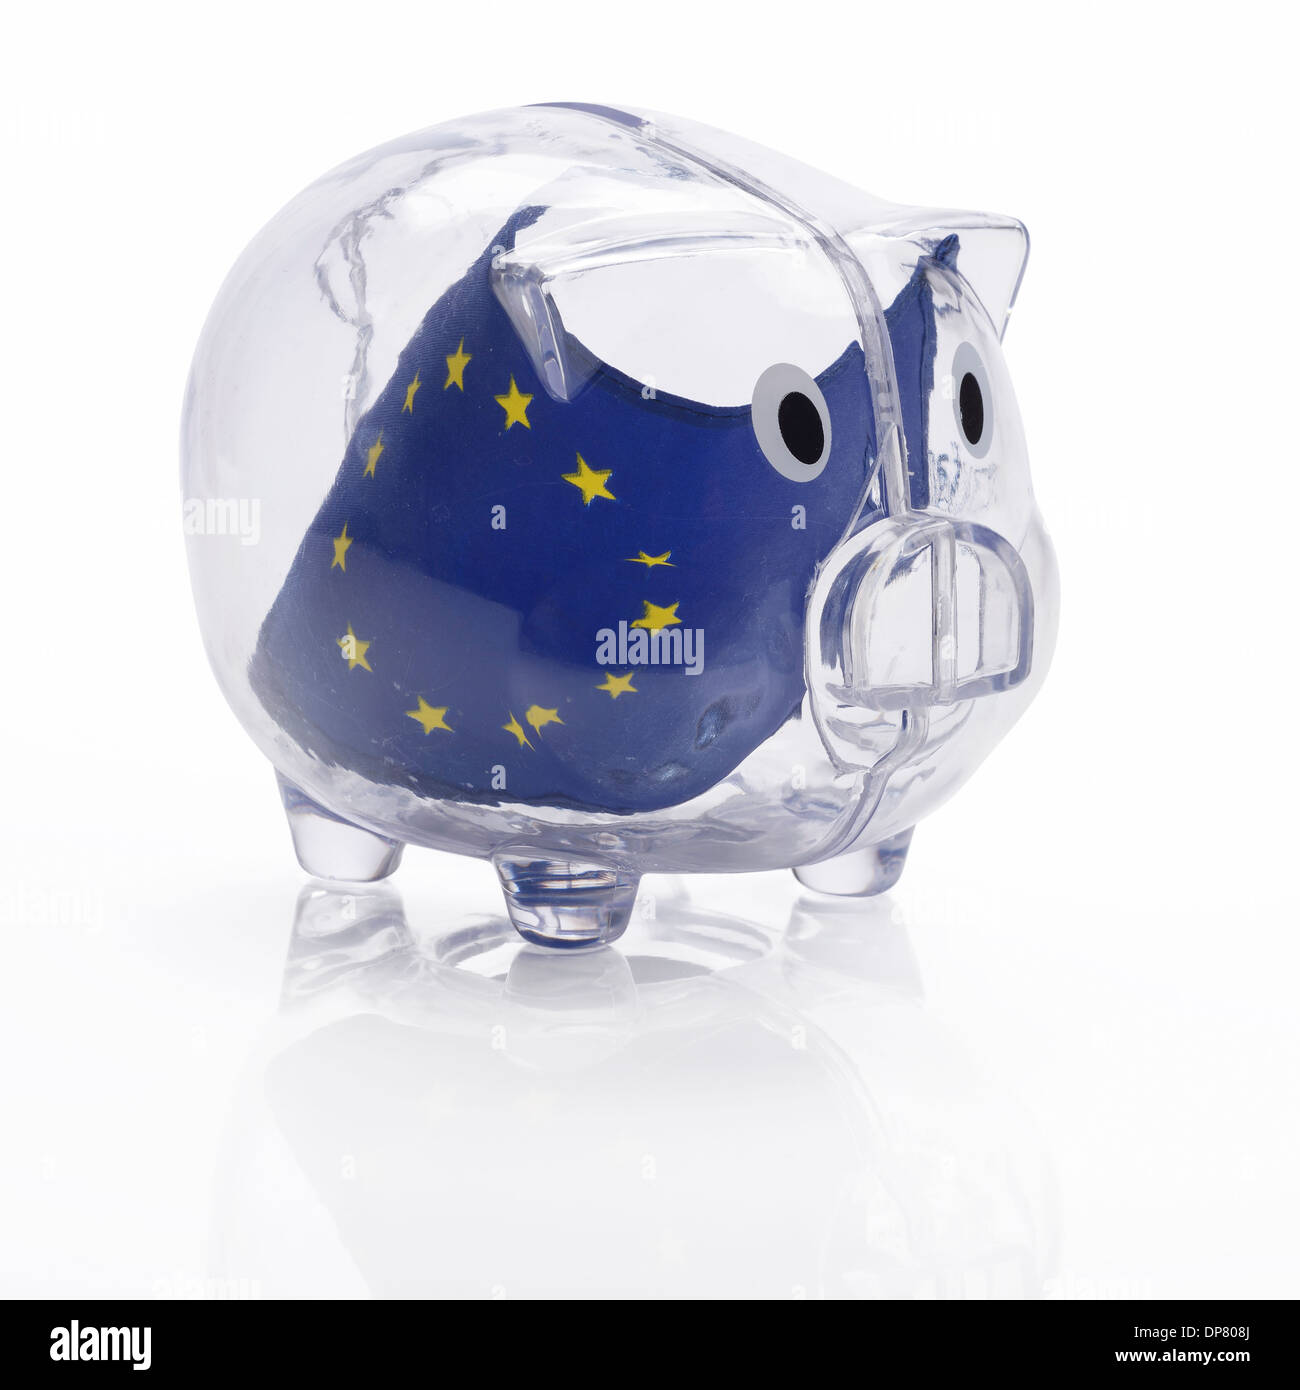 Pabellón europeo de la UE dentro de una hucha de plástico transparente Foto de stock